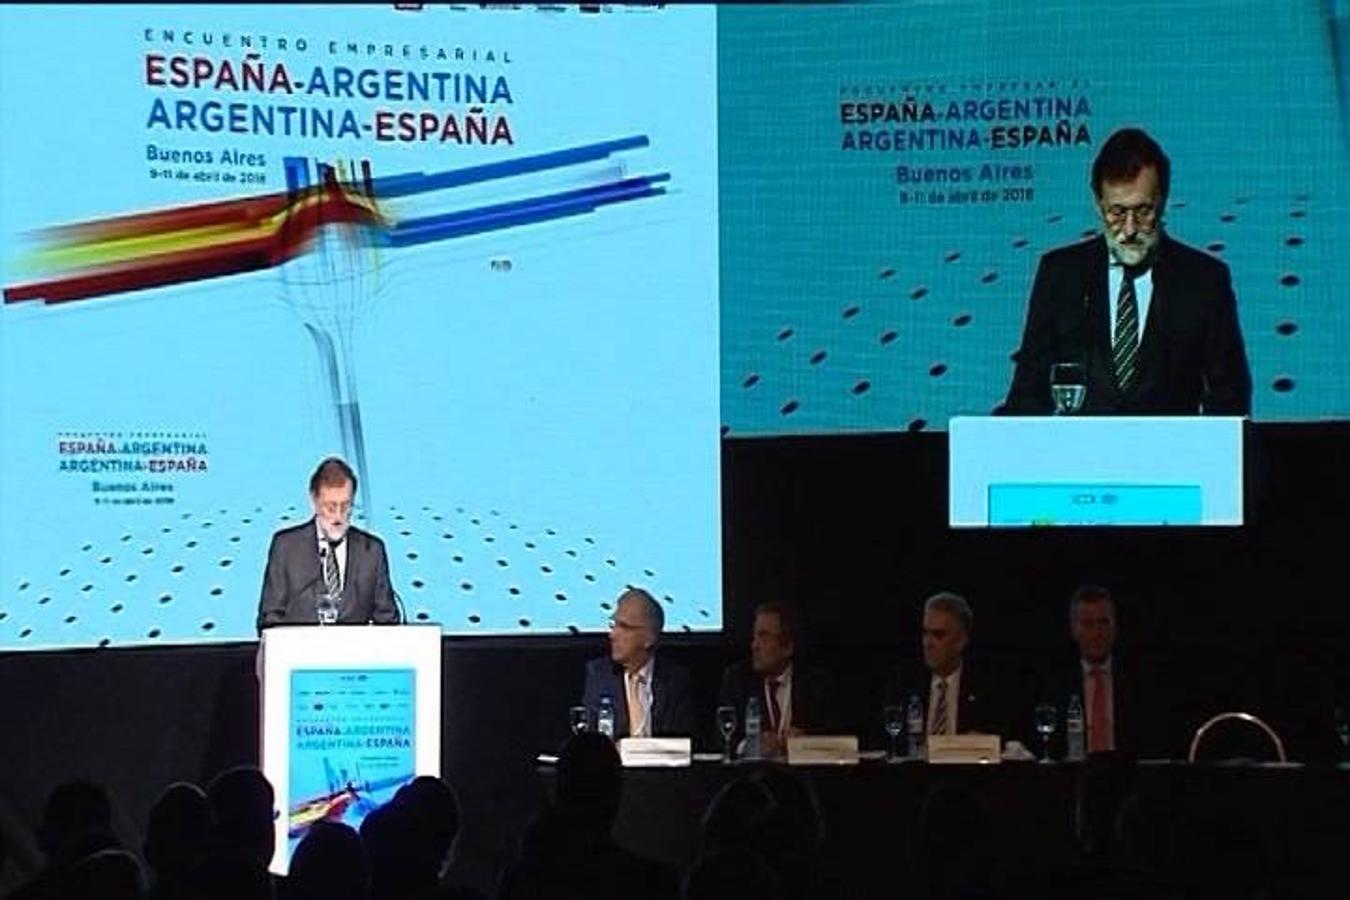 La visita de estado de Rajoy a Argentina, en imágenes. 